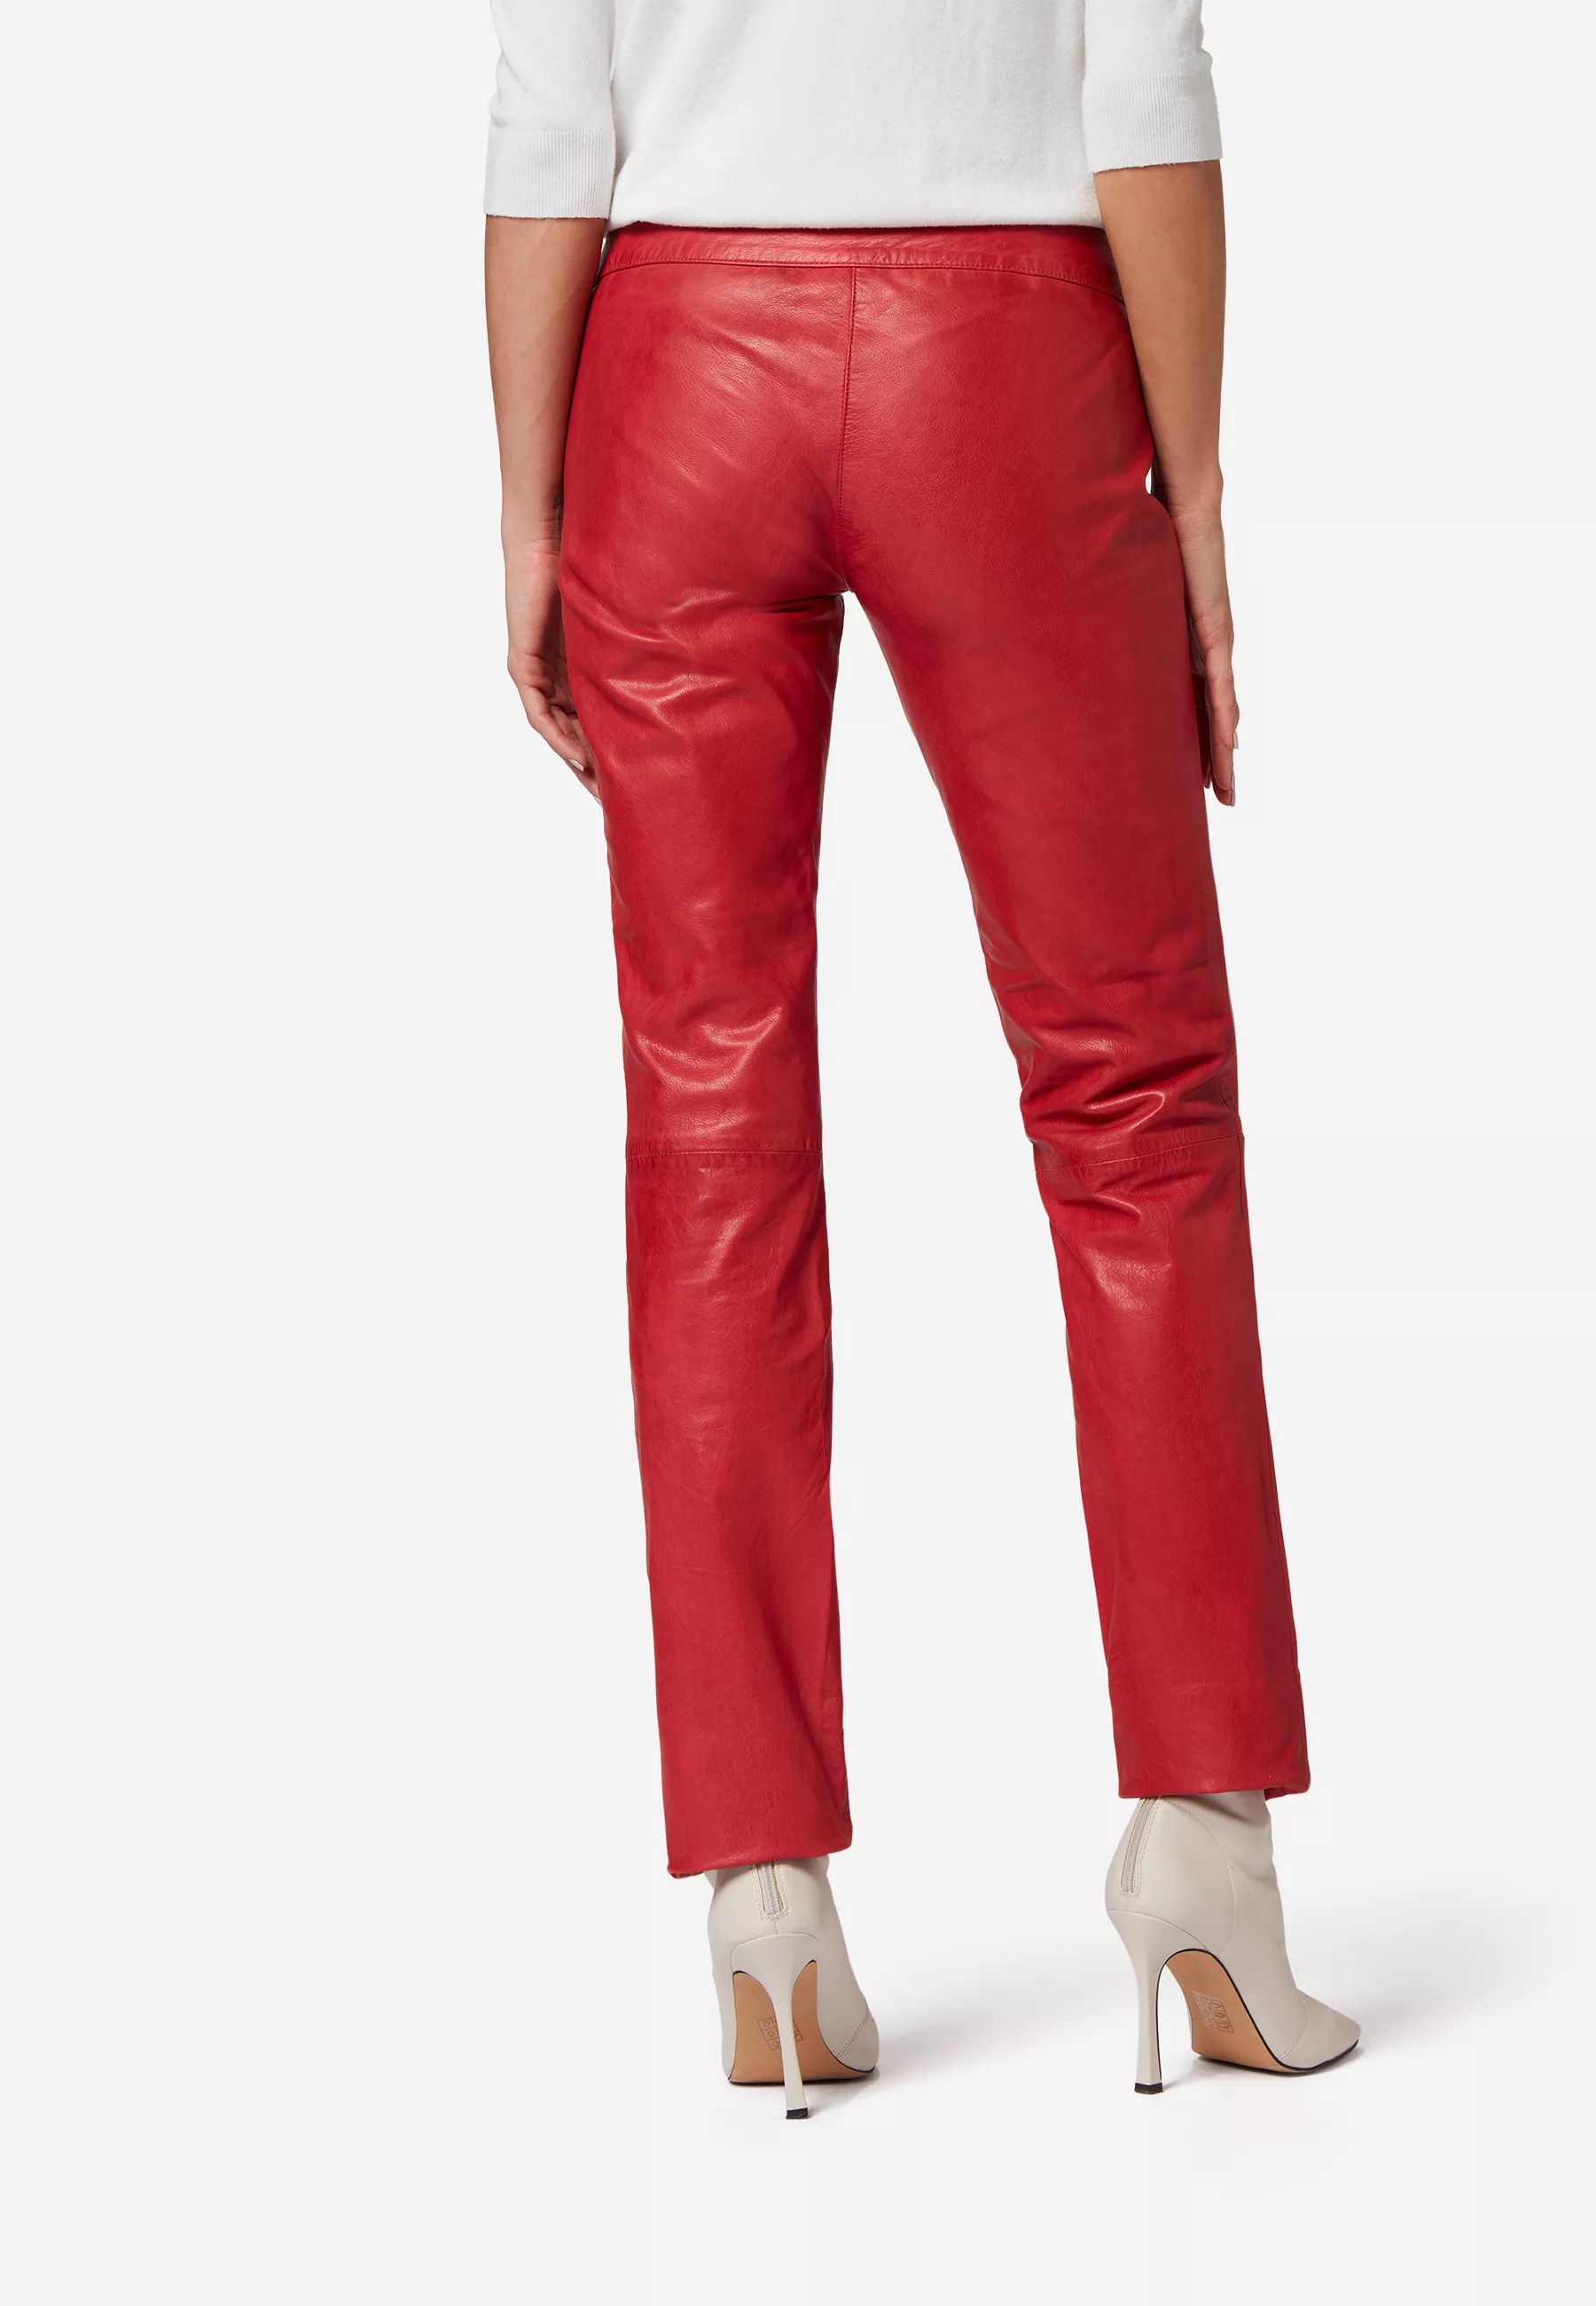 Damen Lederhose Low Cut in Rot von Ricano, Rückansicht am Model